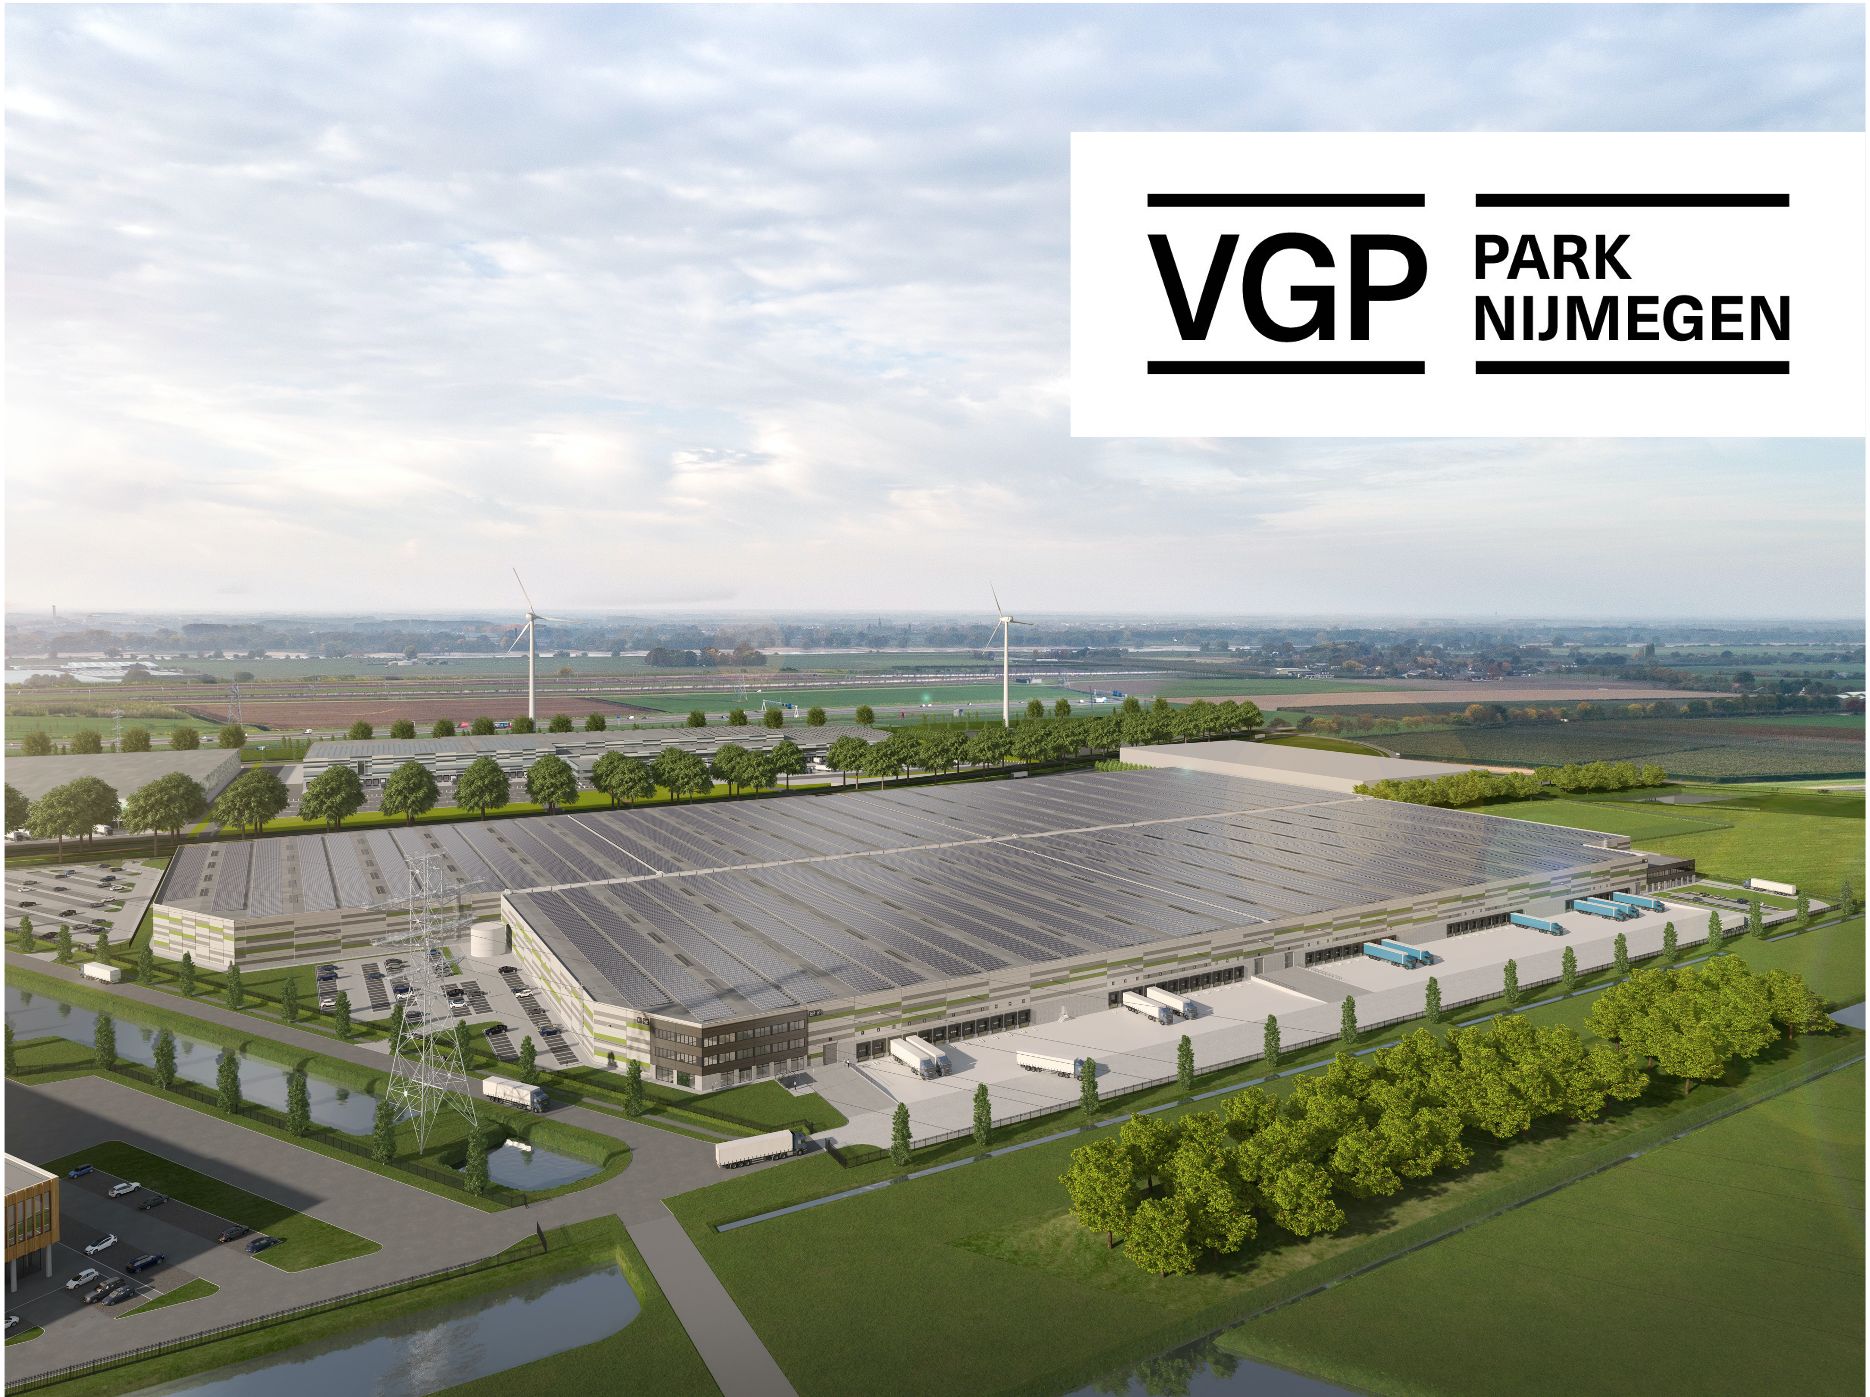 Europäische VGP-Standorte werden mit 100% erneuerbarem Strom über ein virtual power purchase agreement versorgt